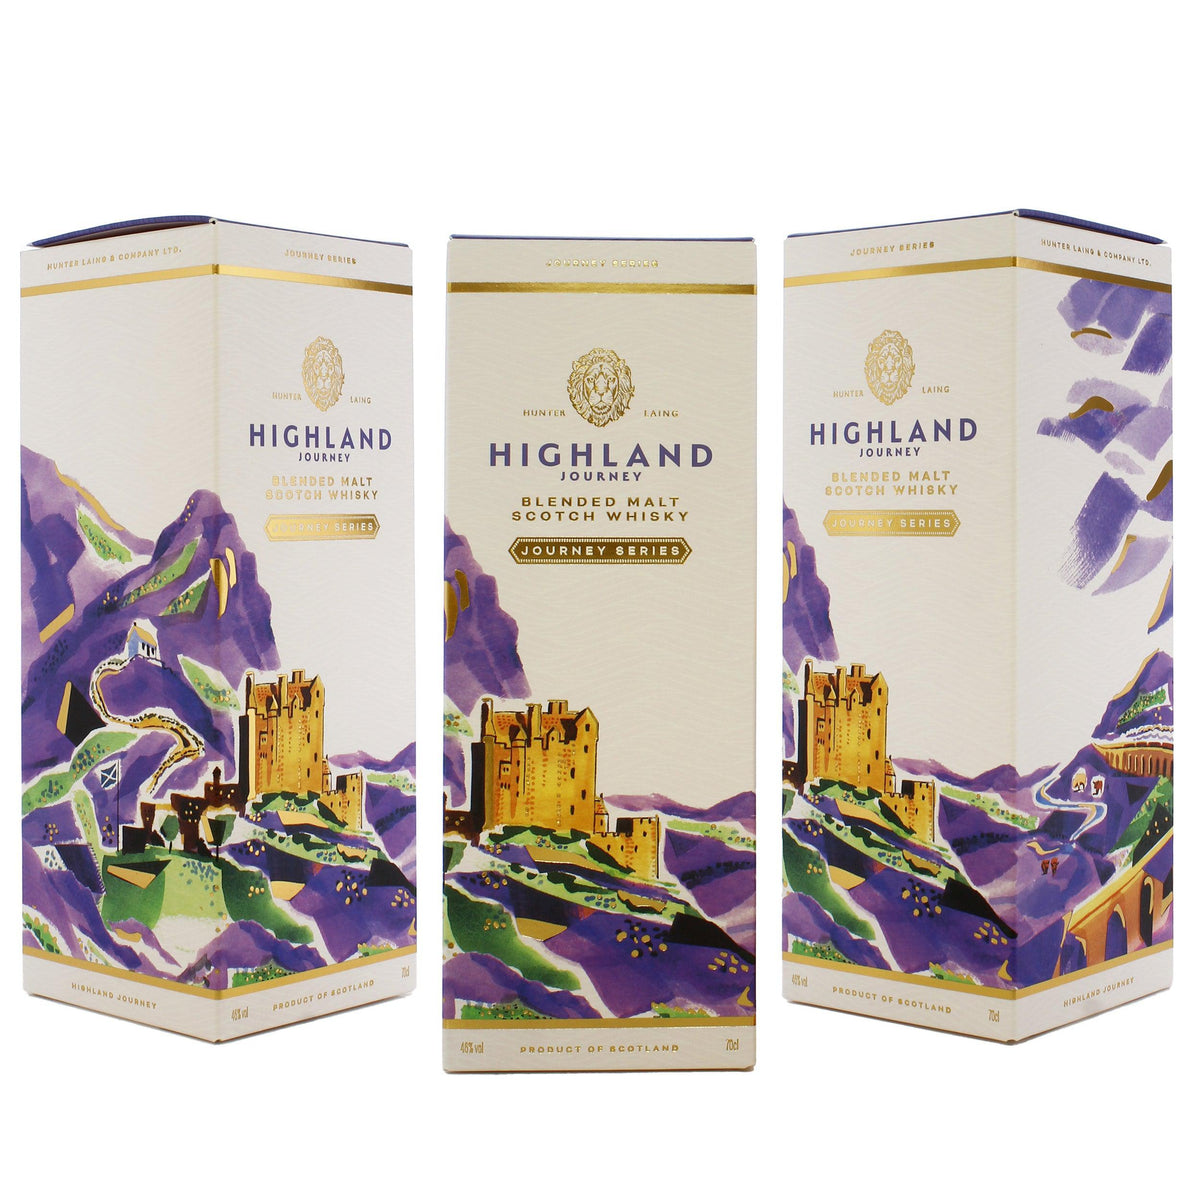 Hunter Laing's Highland Journey Blended Malt Scotch Whisky 700ml